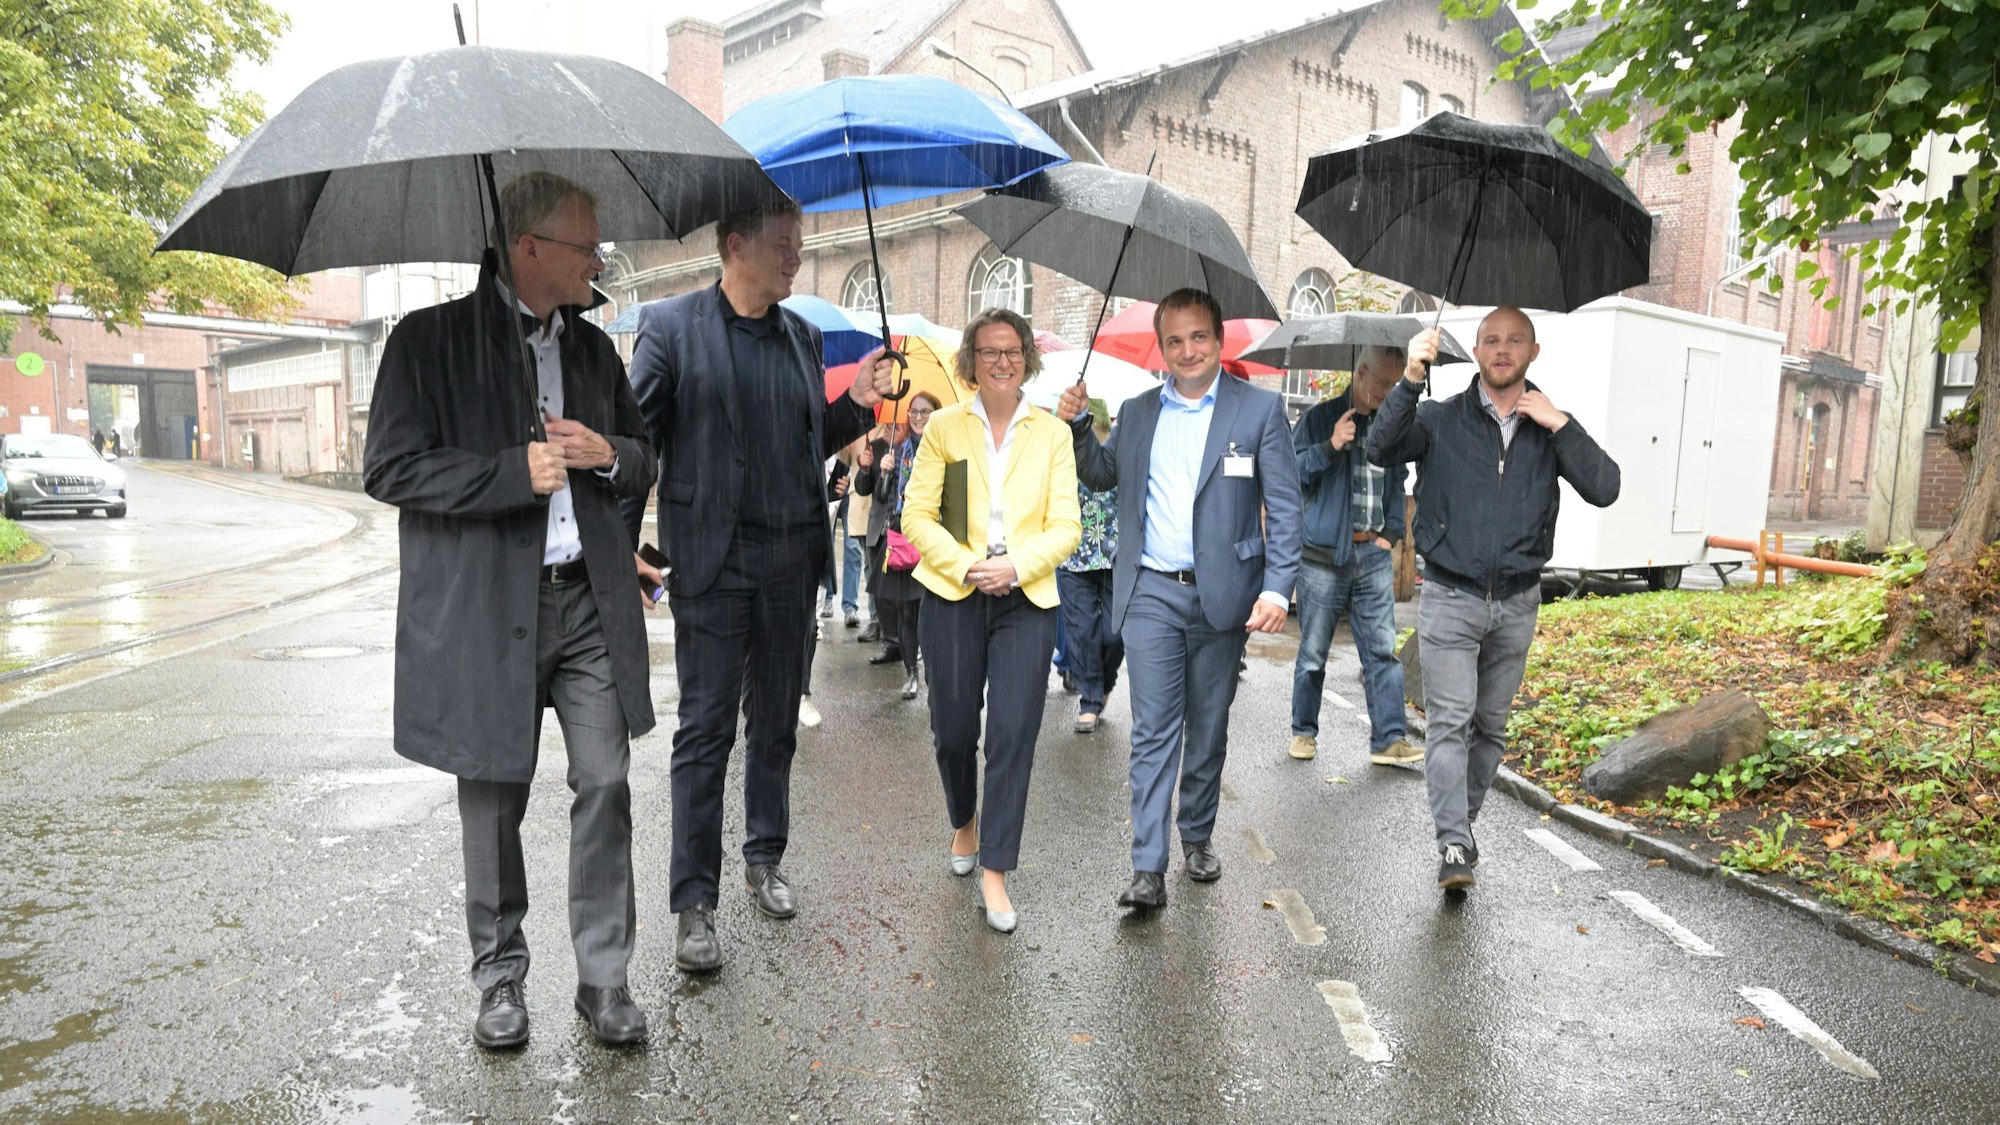 NRW-Bauministerin Ina Scharrenbach (CDU) geht mit lokalen Verantwortlichen unter Regenschirmen übers Zandersgelände.